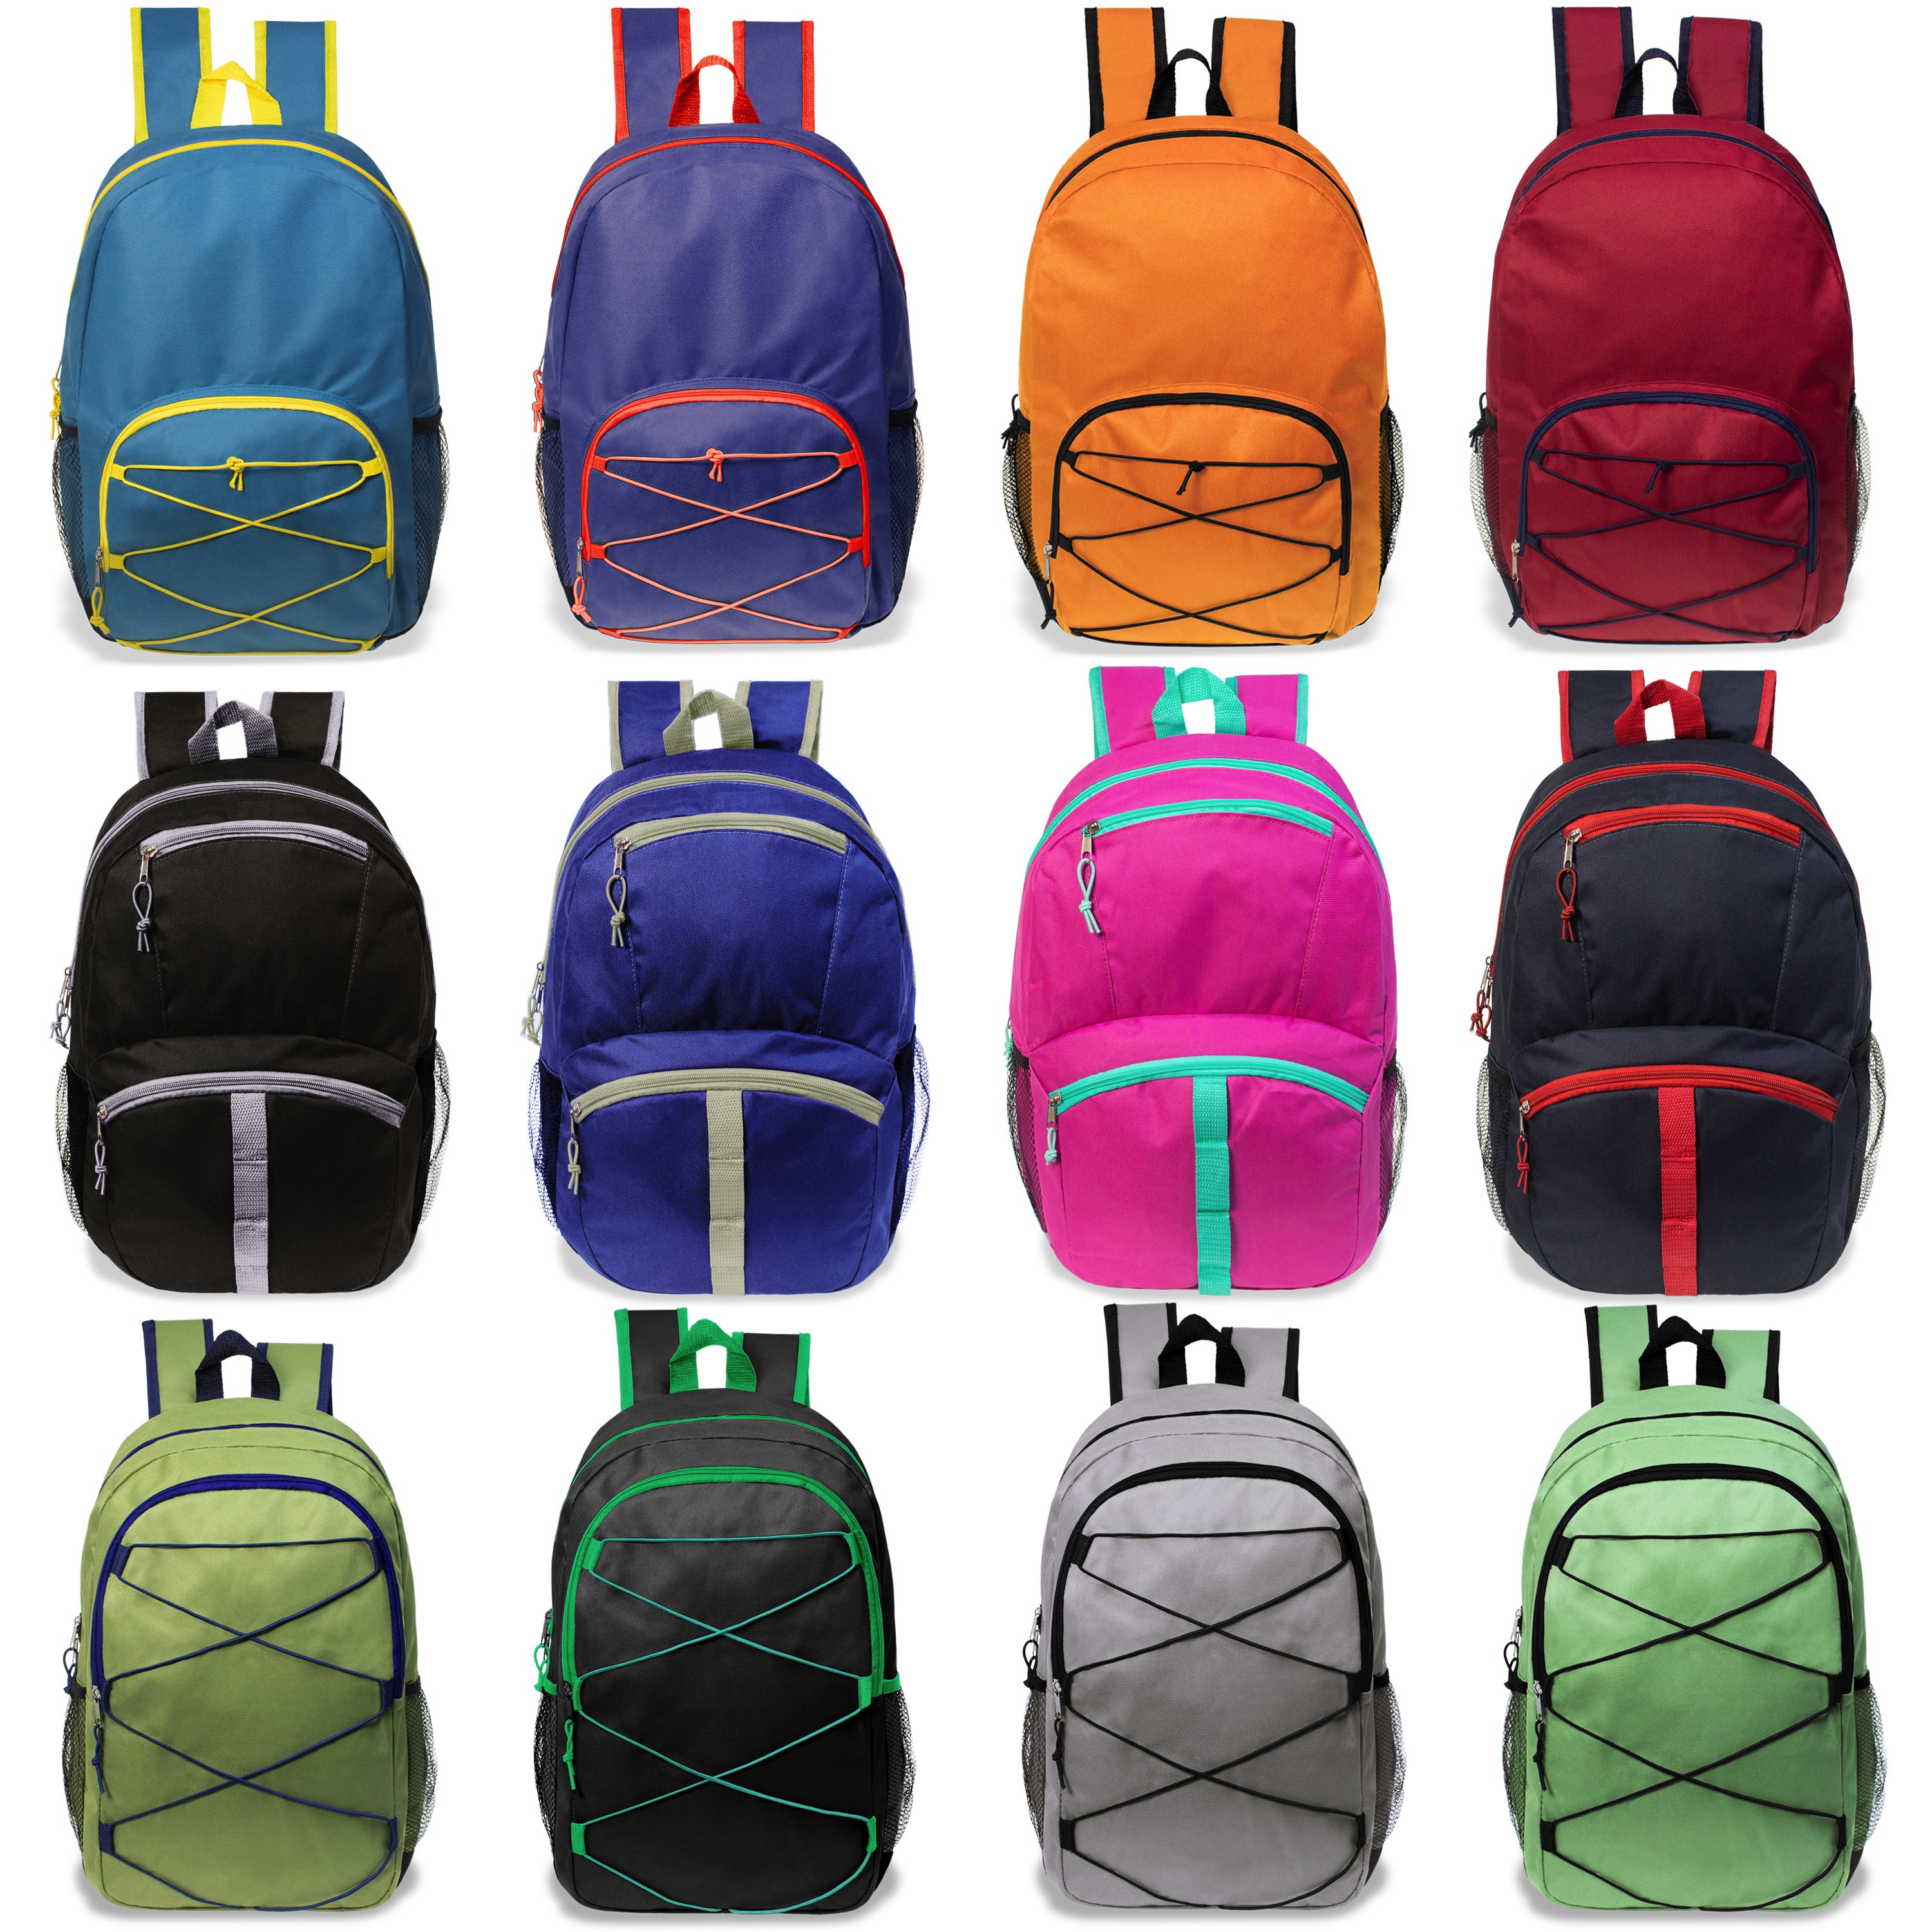 17 inch wholesale bungee backpacks in bulk